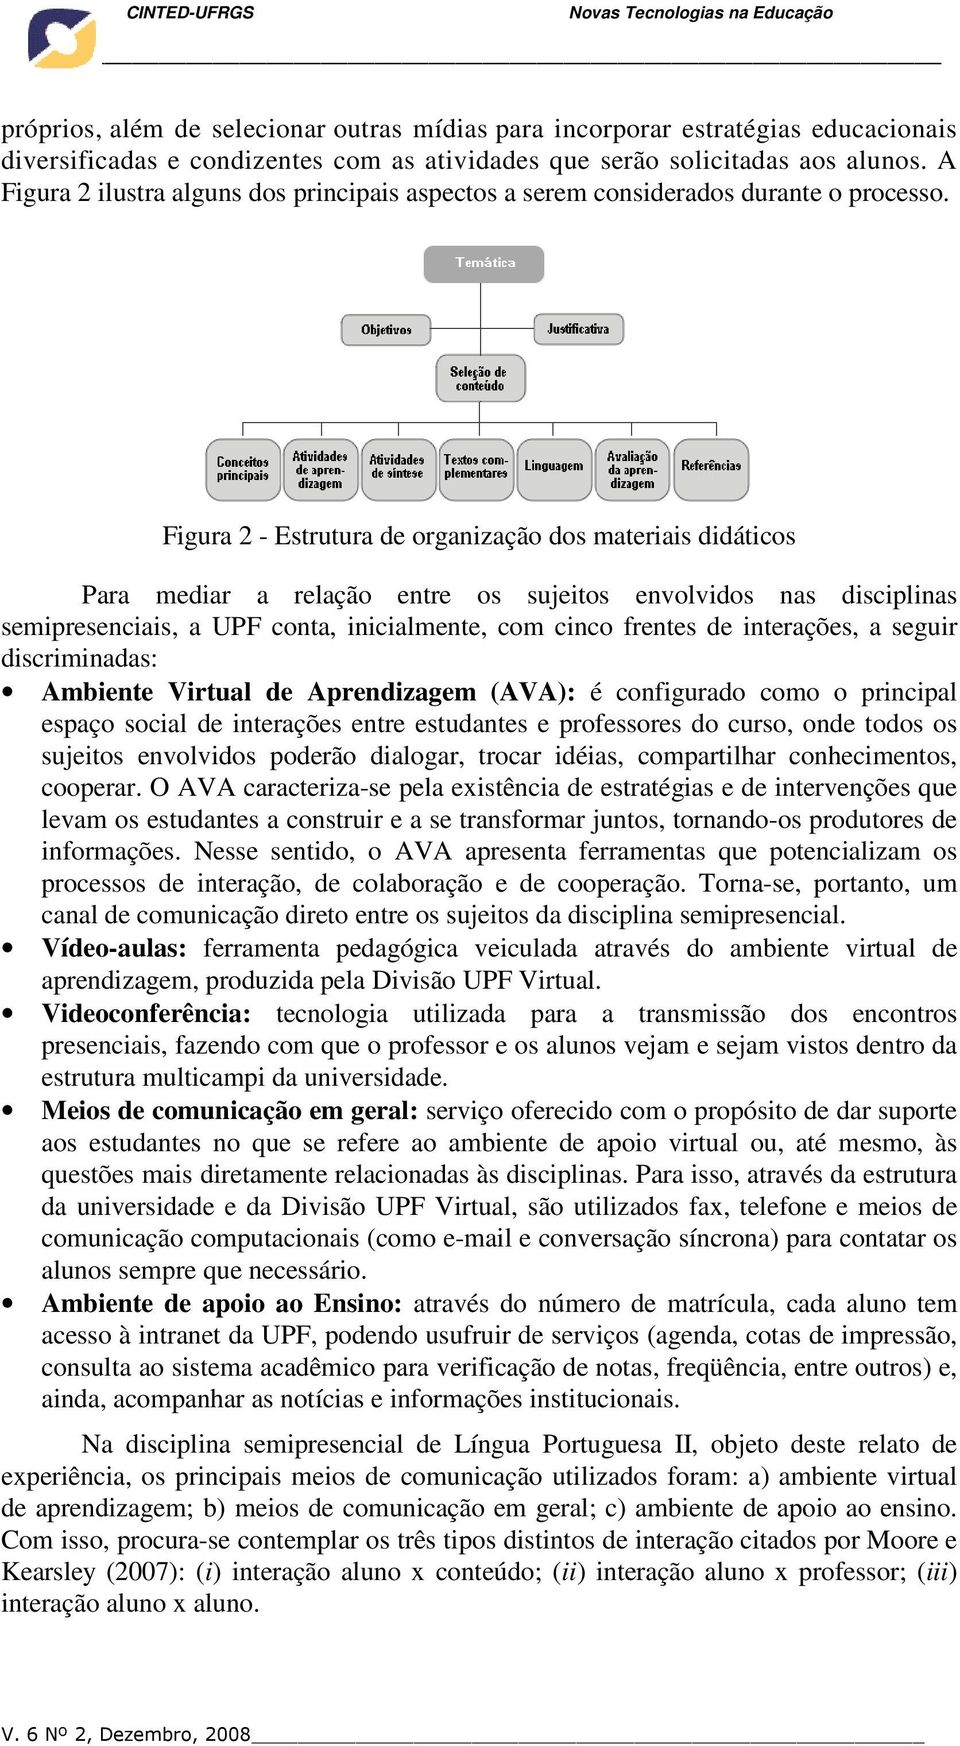 Figura 2 - Estrutura de organização dos materiais didáticos Para mediar a relação entre os sujeitos envolvidos nas disciplinas semipresenciais, a UPF conta, inicialmente, com cinco frentes de